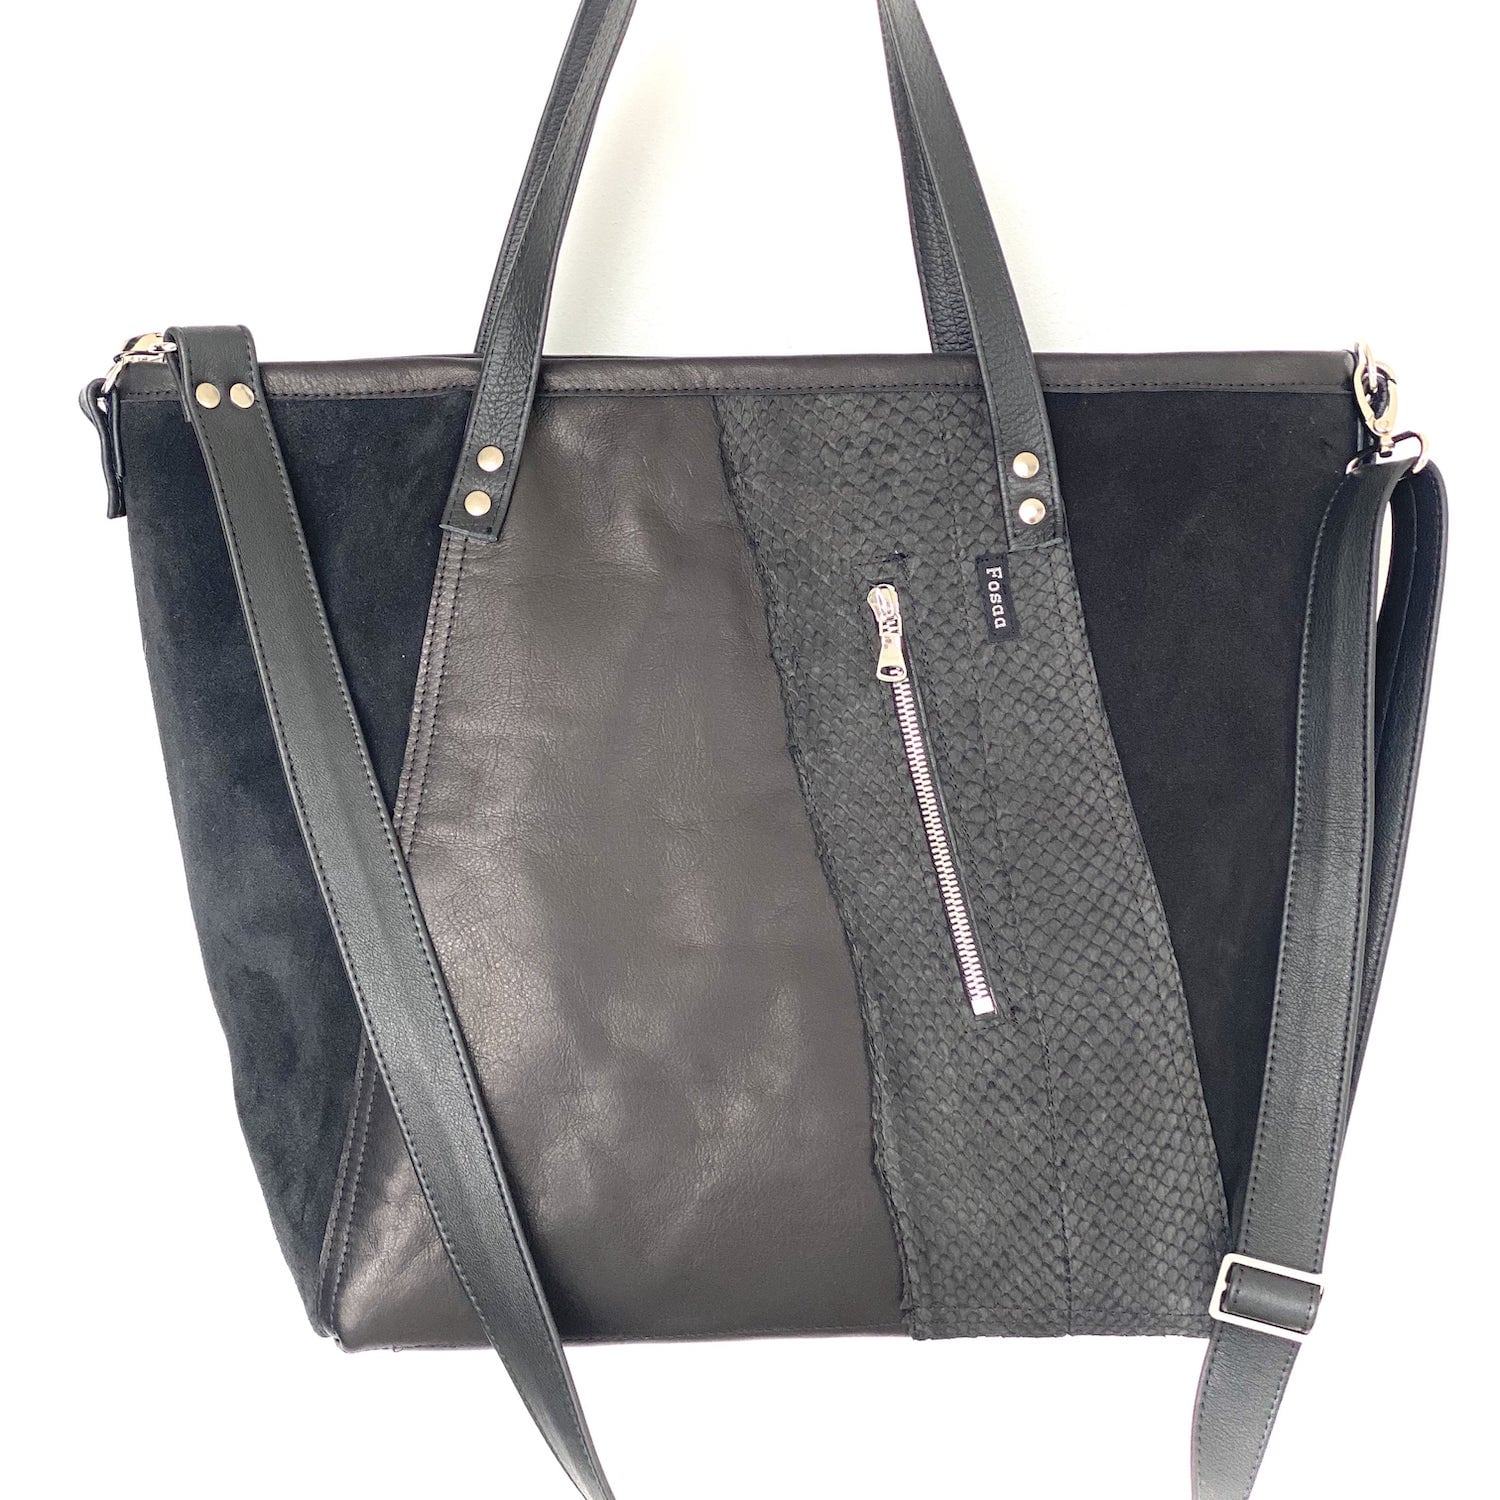 Shoulder bag No41 - Fosaa Design